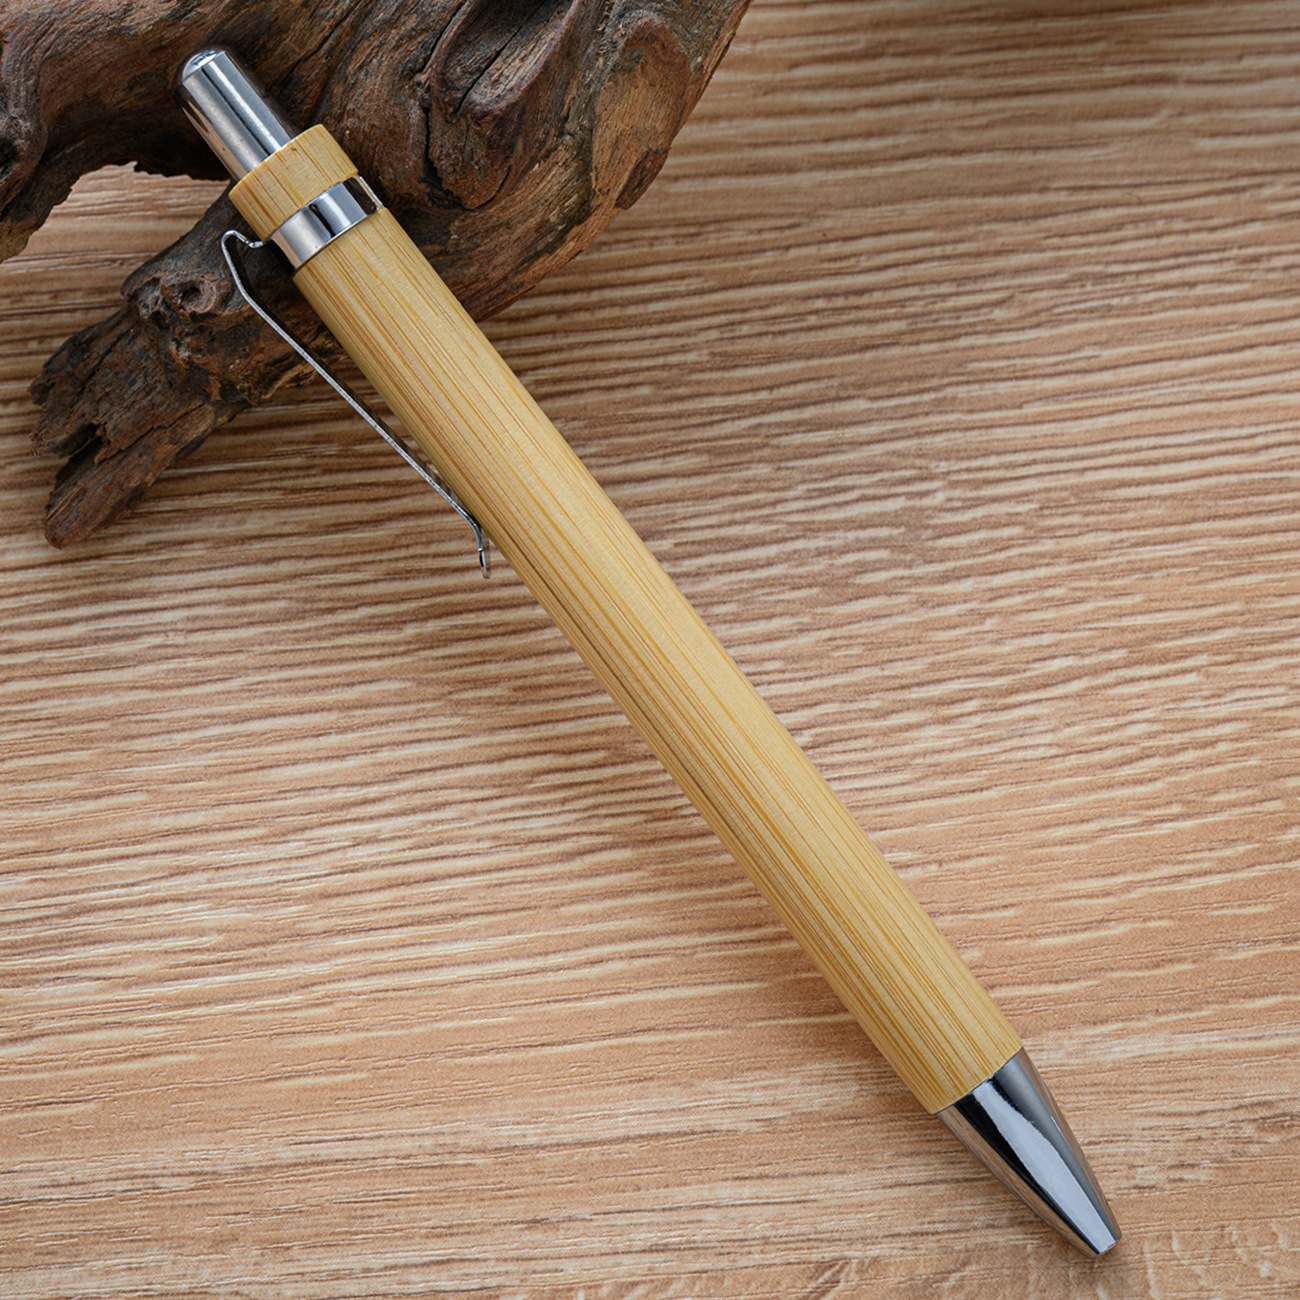 Bambusholz -Kugelschreiber 1,0 mm Tipp schwarze Tinte Business Signature Ball Stift Büroschule Zerstingende Schreibwaren 100pcs